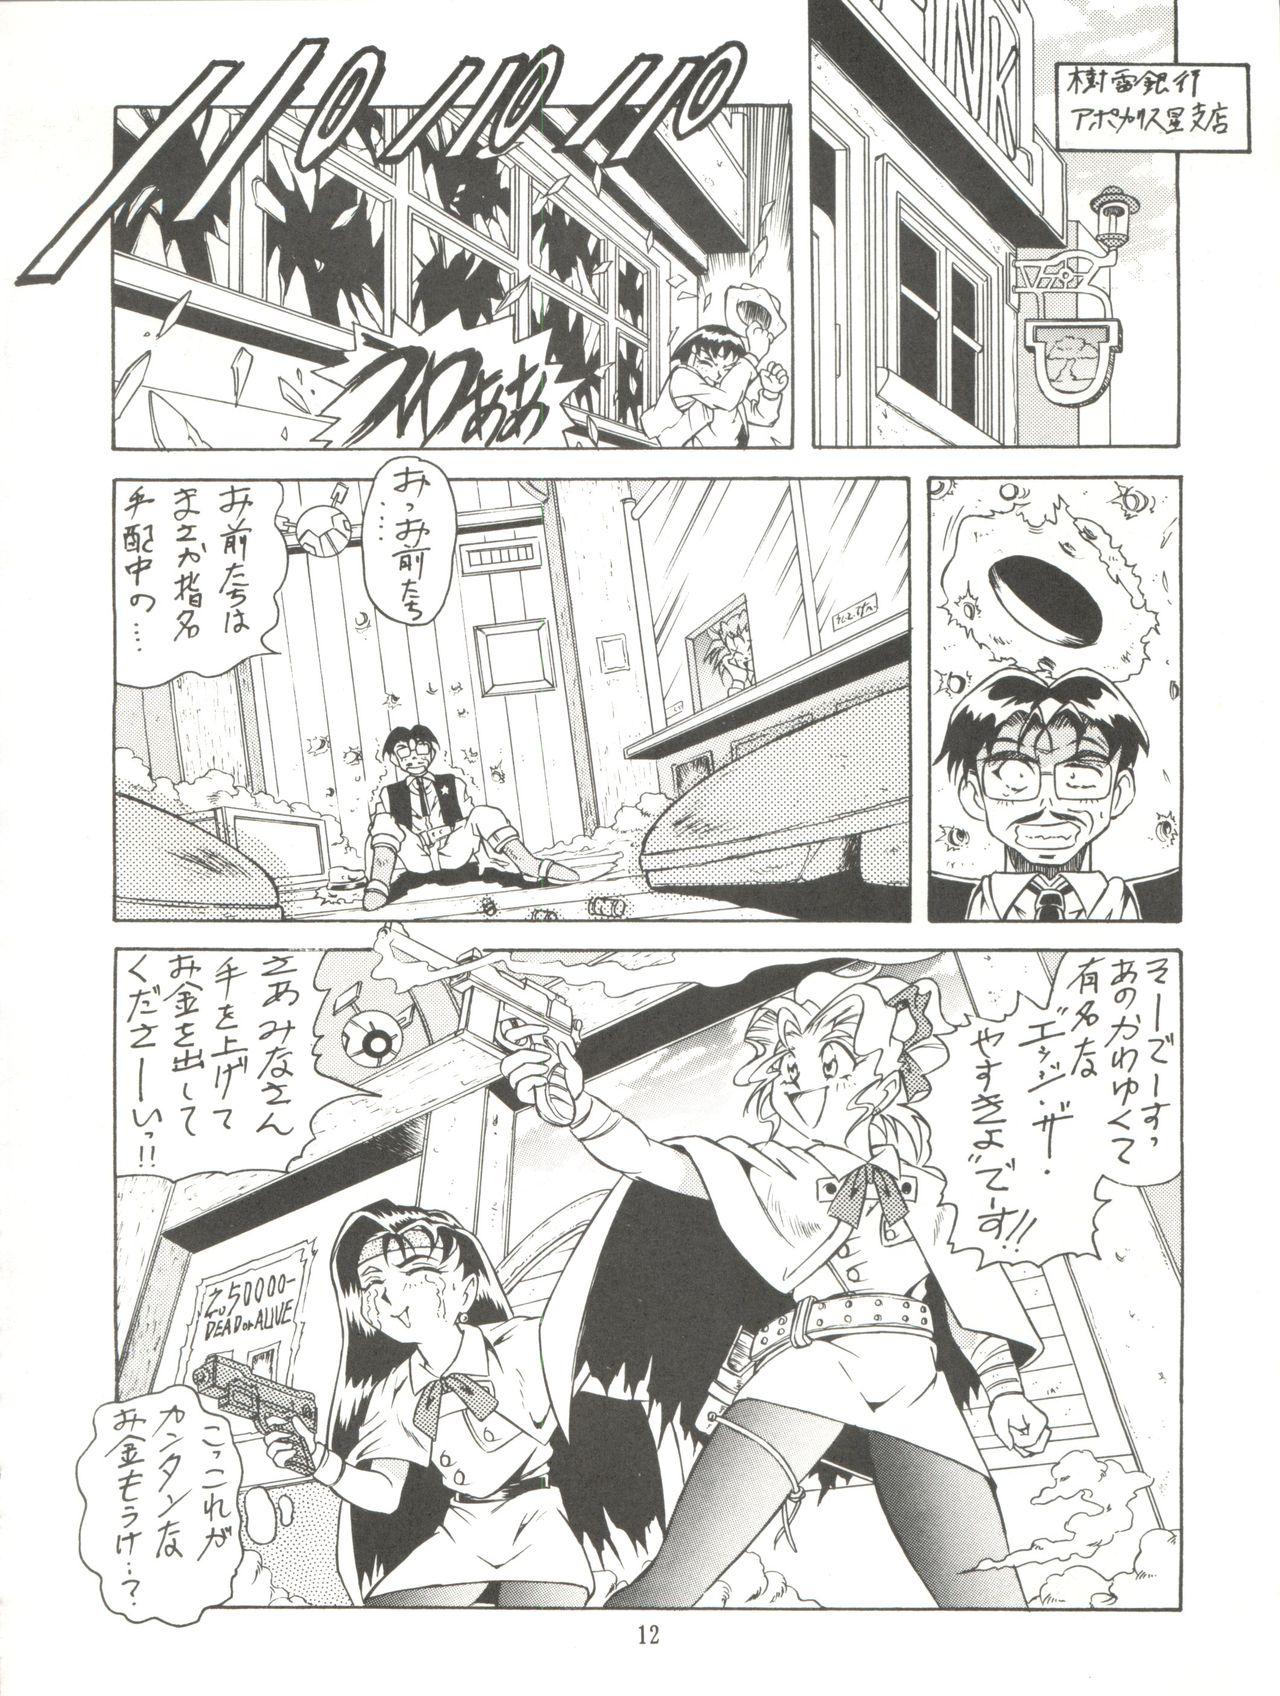 Backshots Tenchi Muyo! Miyan 3 Final - Tenchi muyo Time - Page 12